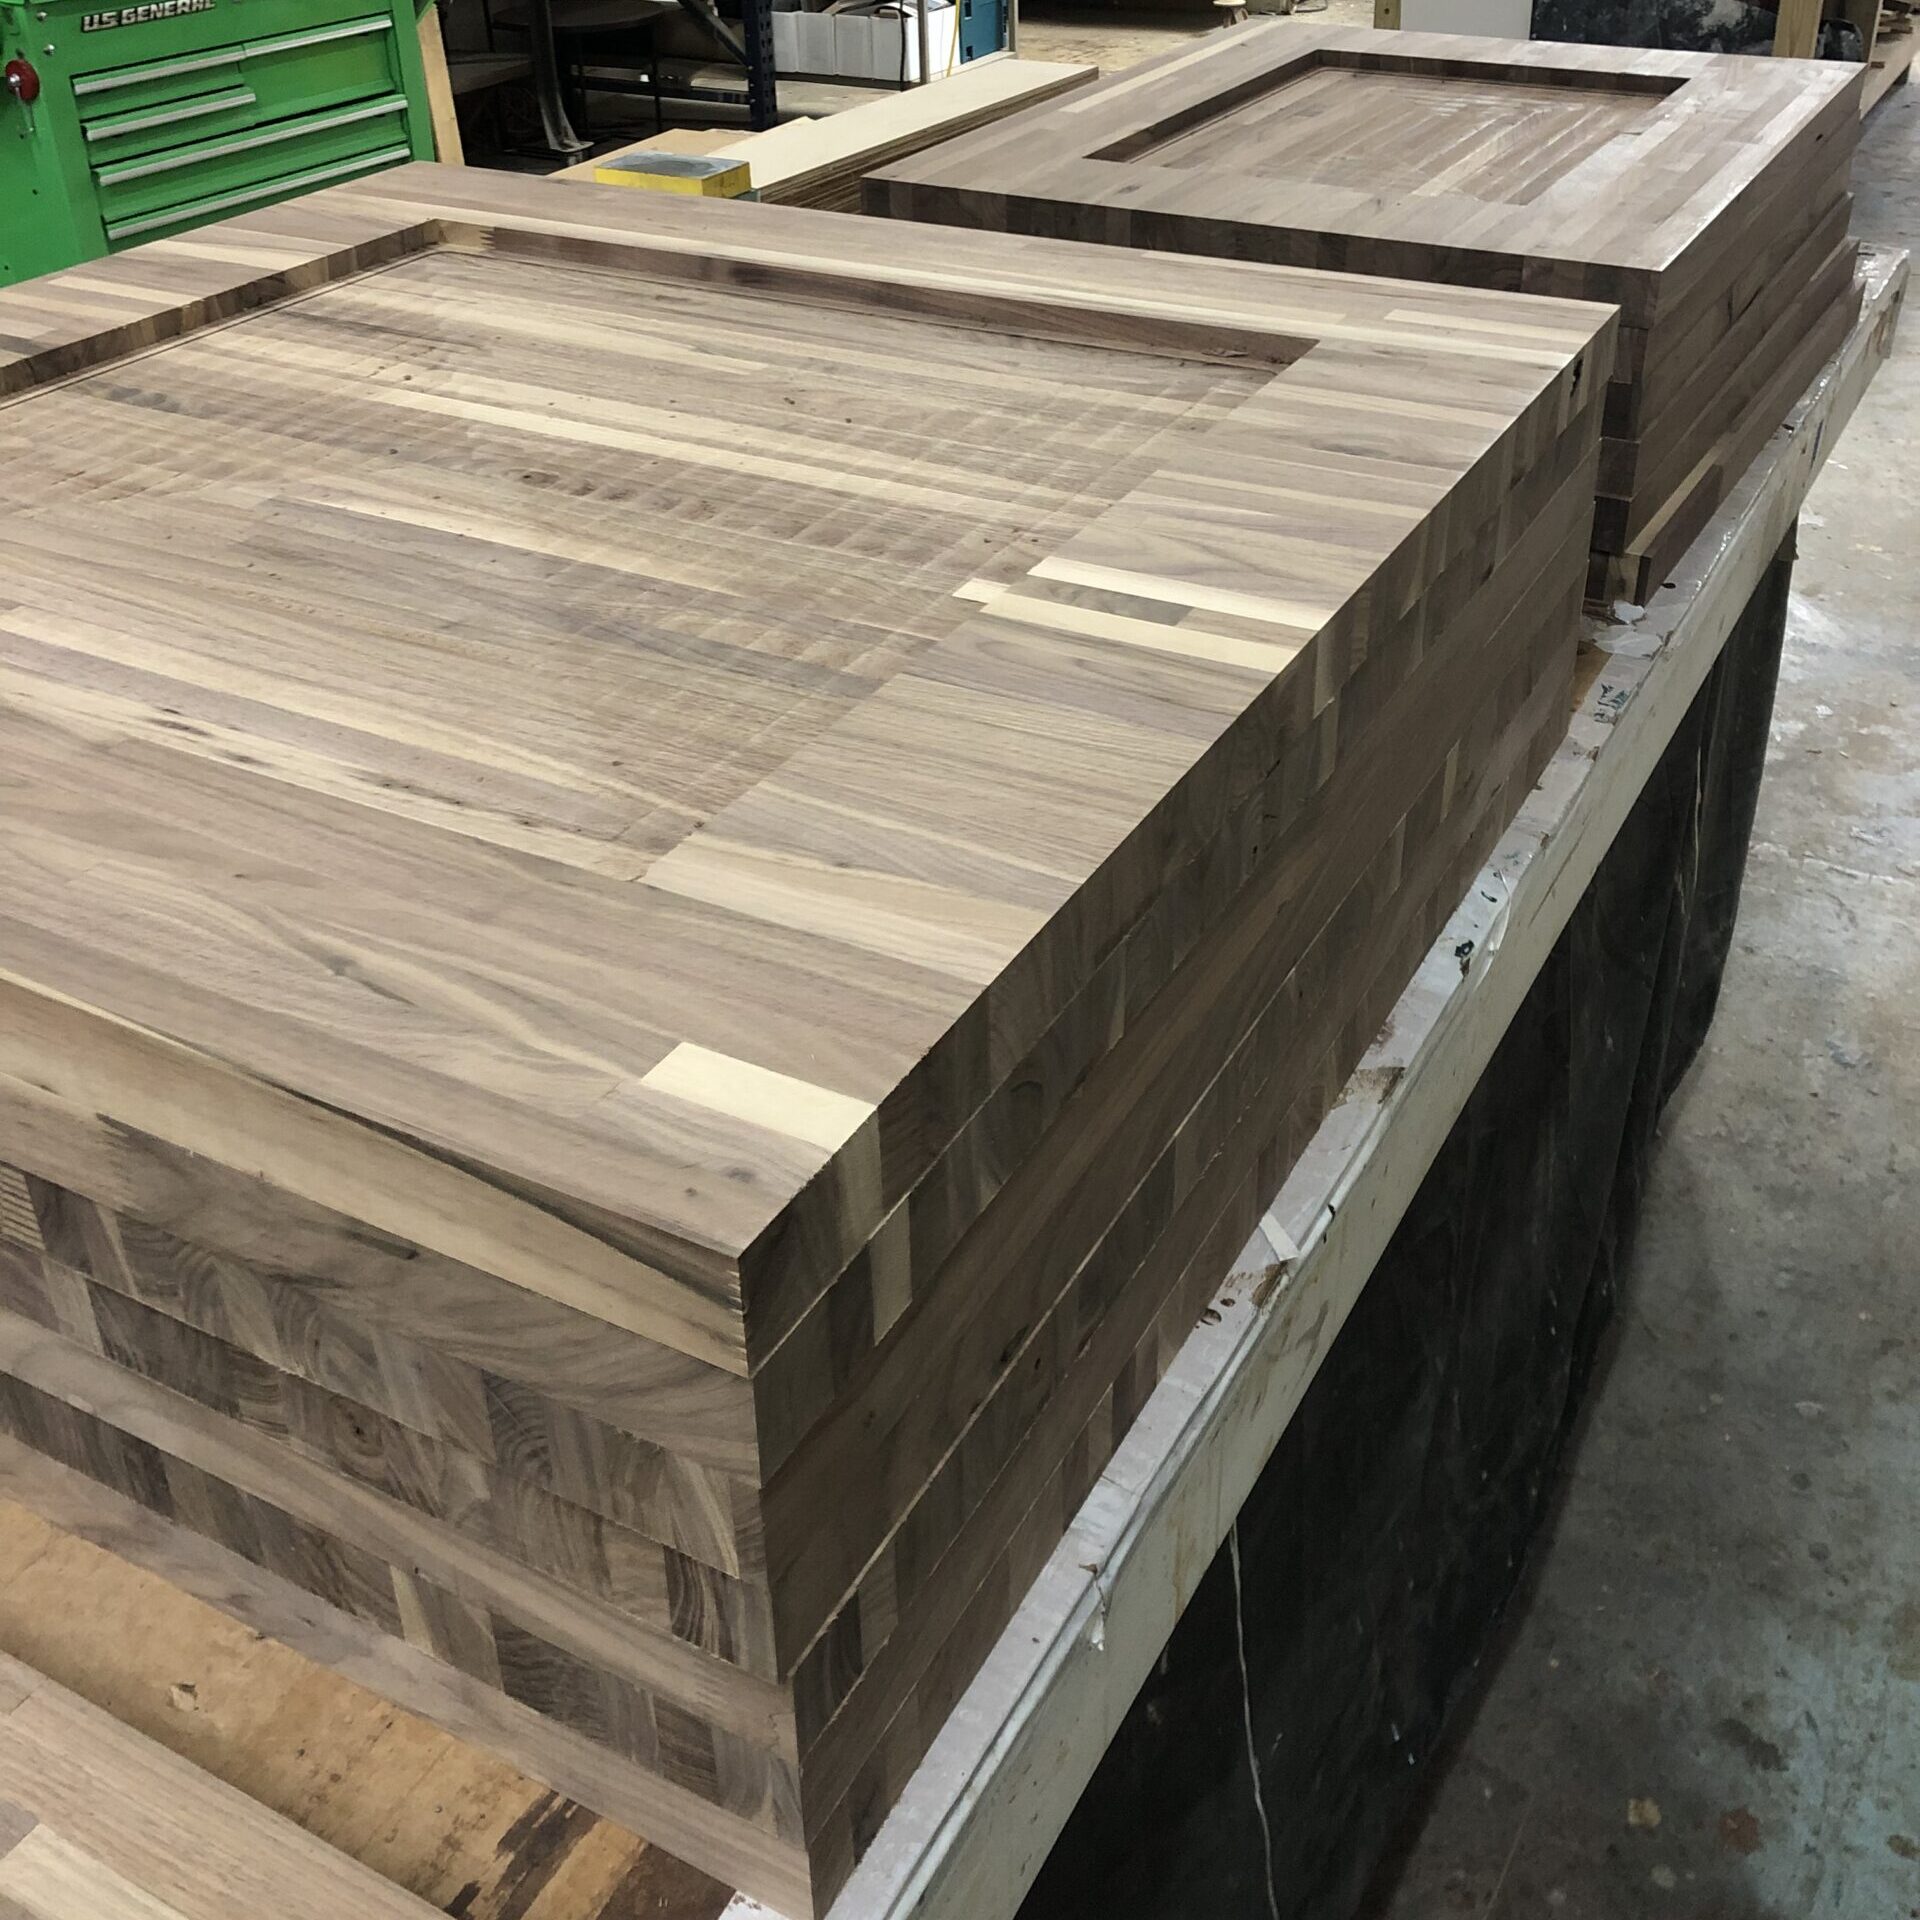 CNC solid wood